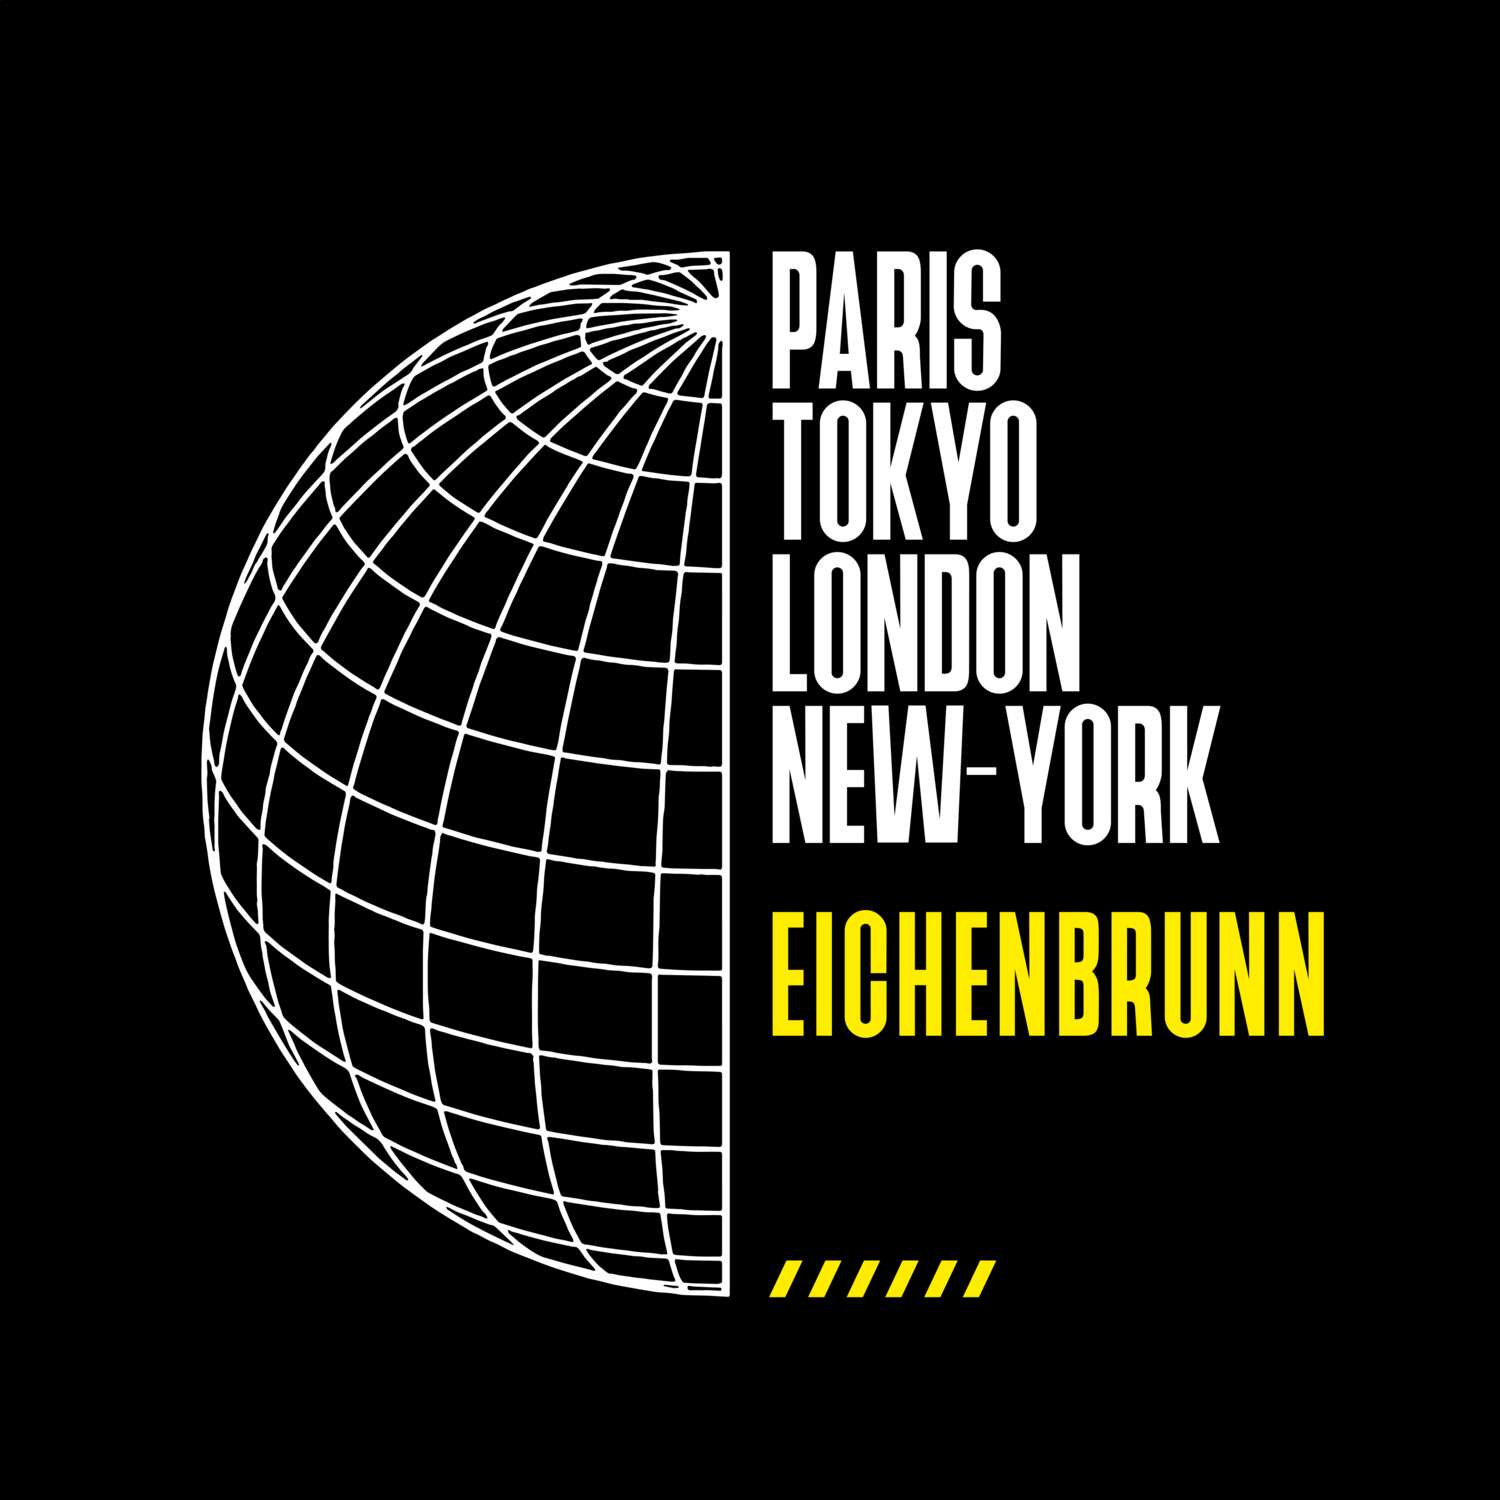 Eichenbrunn T-Shirt »Paris Tokyo London«